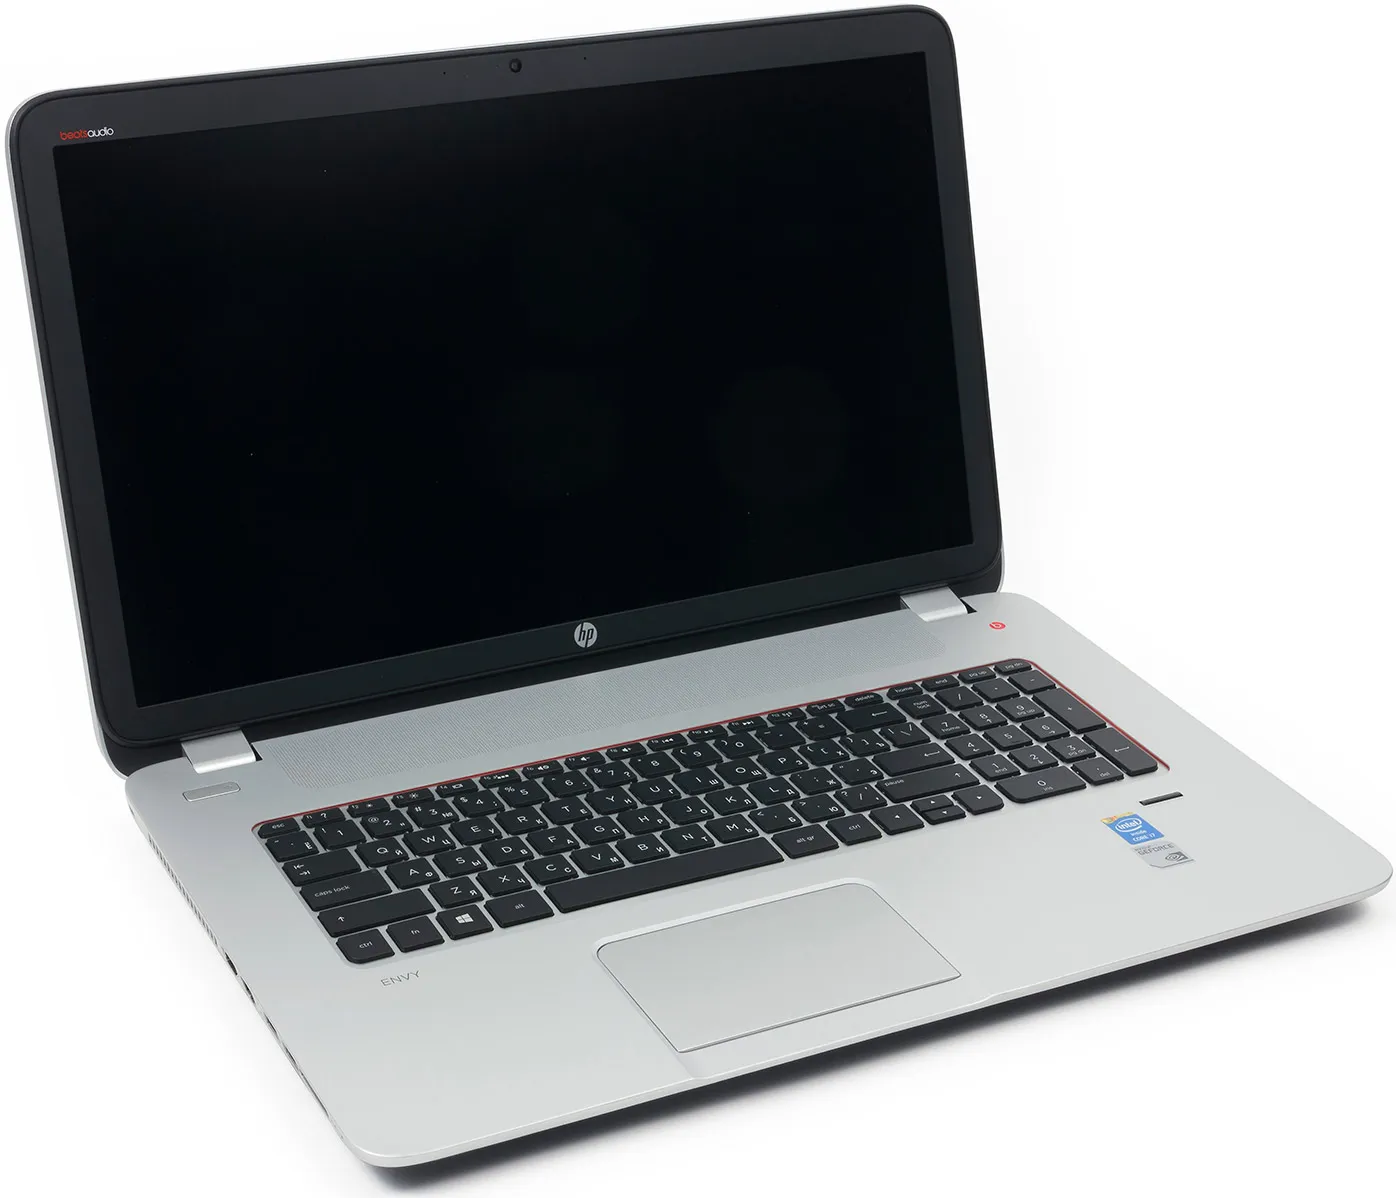 Ноутбук HP 455 G1 /AMD A10-5750/8 GB DDR4/ 500GB HDD /15.6" HD LED/ 2GB AMD Radeon HD 8750M/DVD/RUS+ Bag#5